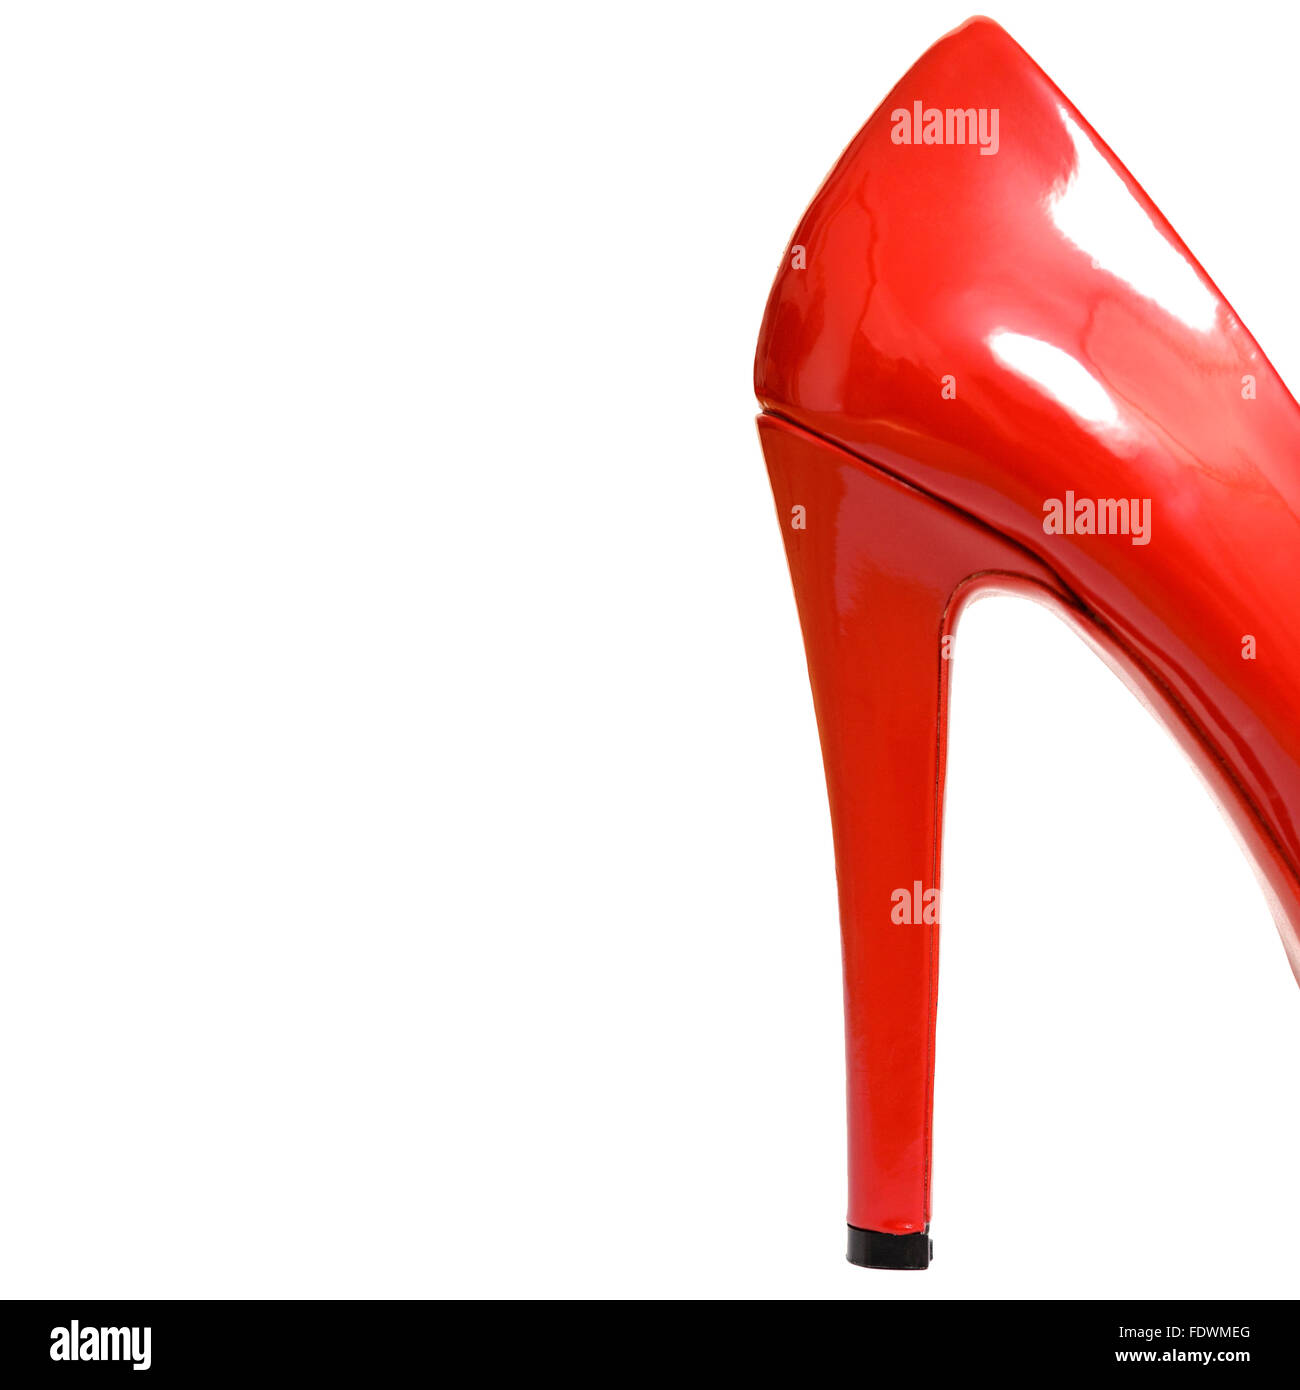 Zurück rot glänzenden Lack High Heels auf weißem Hintergrund. Model Release: Nein Property Release: Nein. Stockfoto